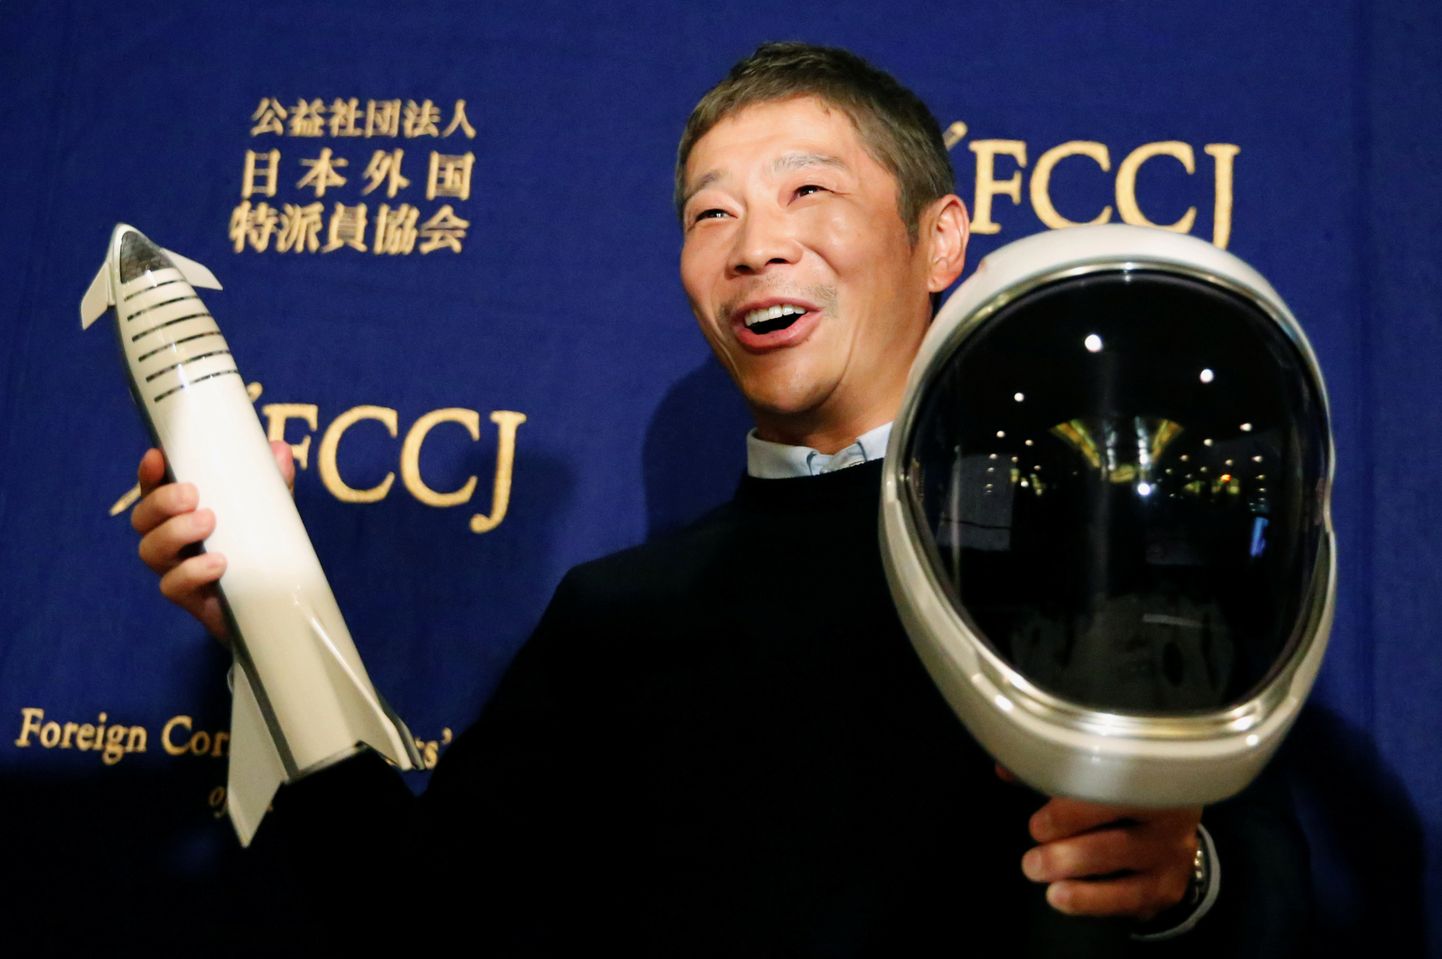 Jaapani miljardär Yusaku Maezawa, kes valiti esimeseks Kuu-turistiks ja kes pakub kaheksale inimesele tasuta Kuu-lendu